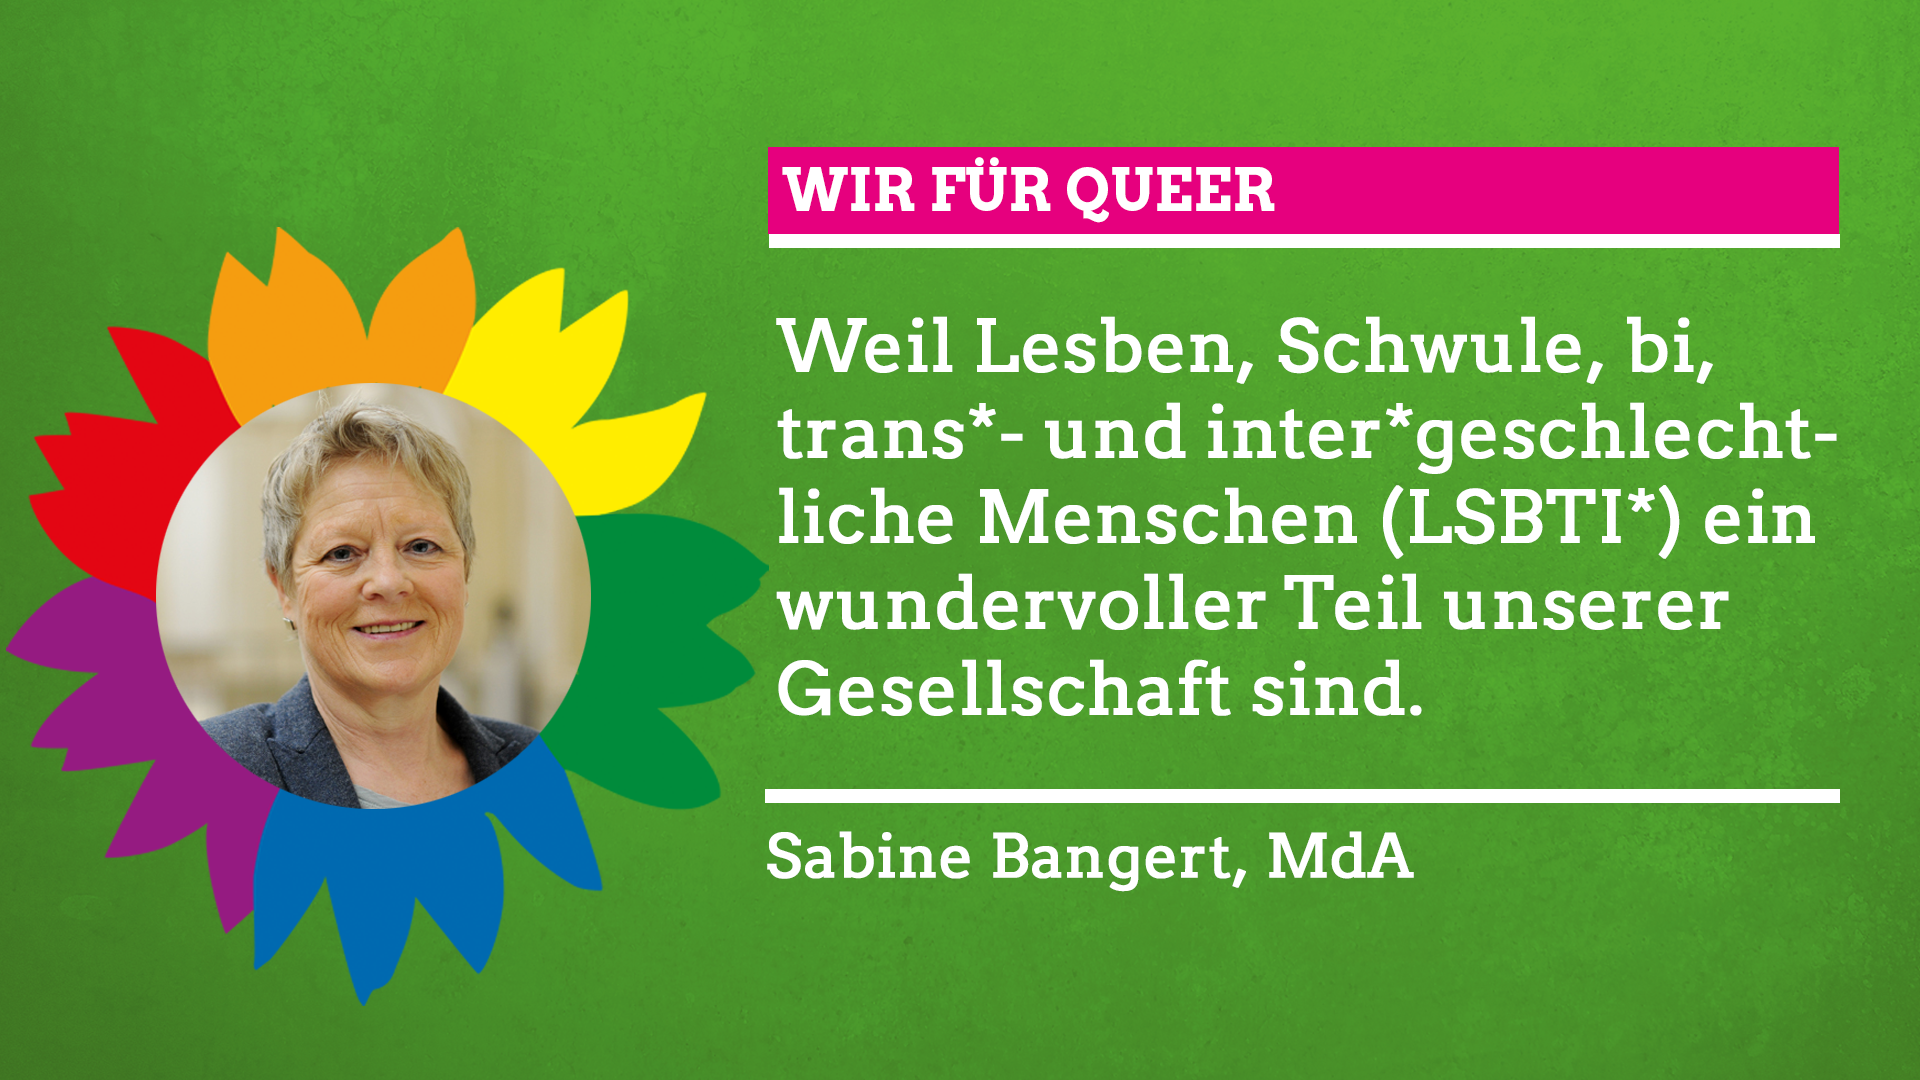 Sabine Bangert sagt im Rahmen unserer Grünen Regenbogenwochen: "Wir für Queer!"